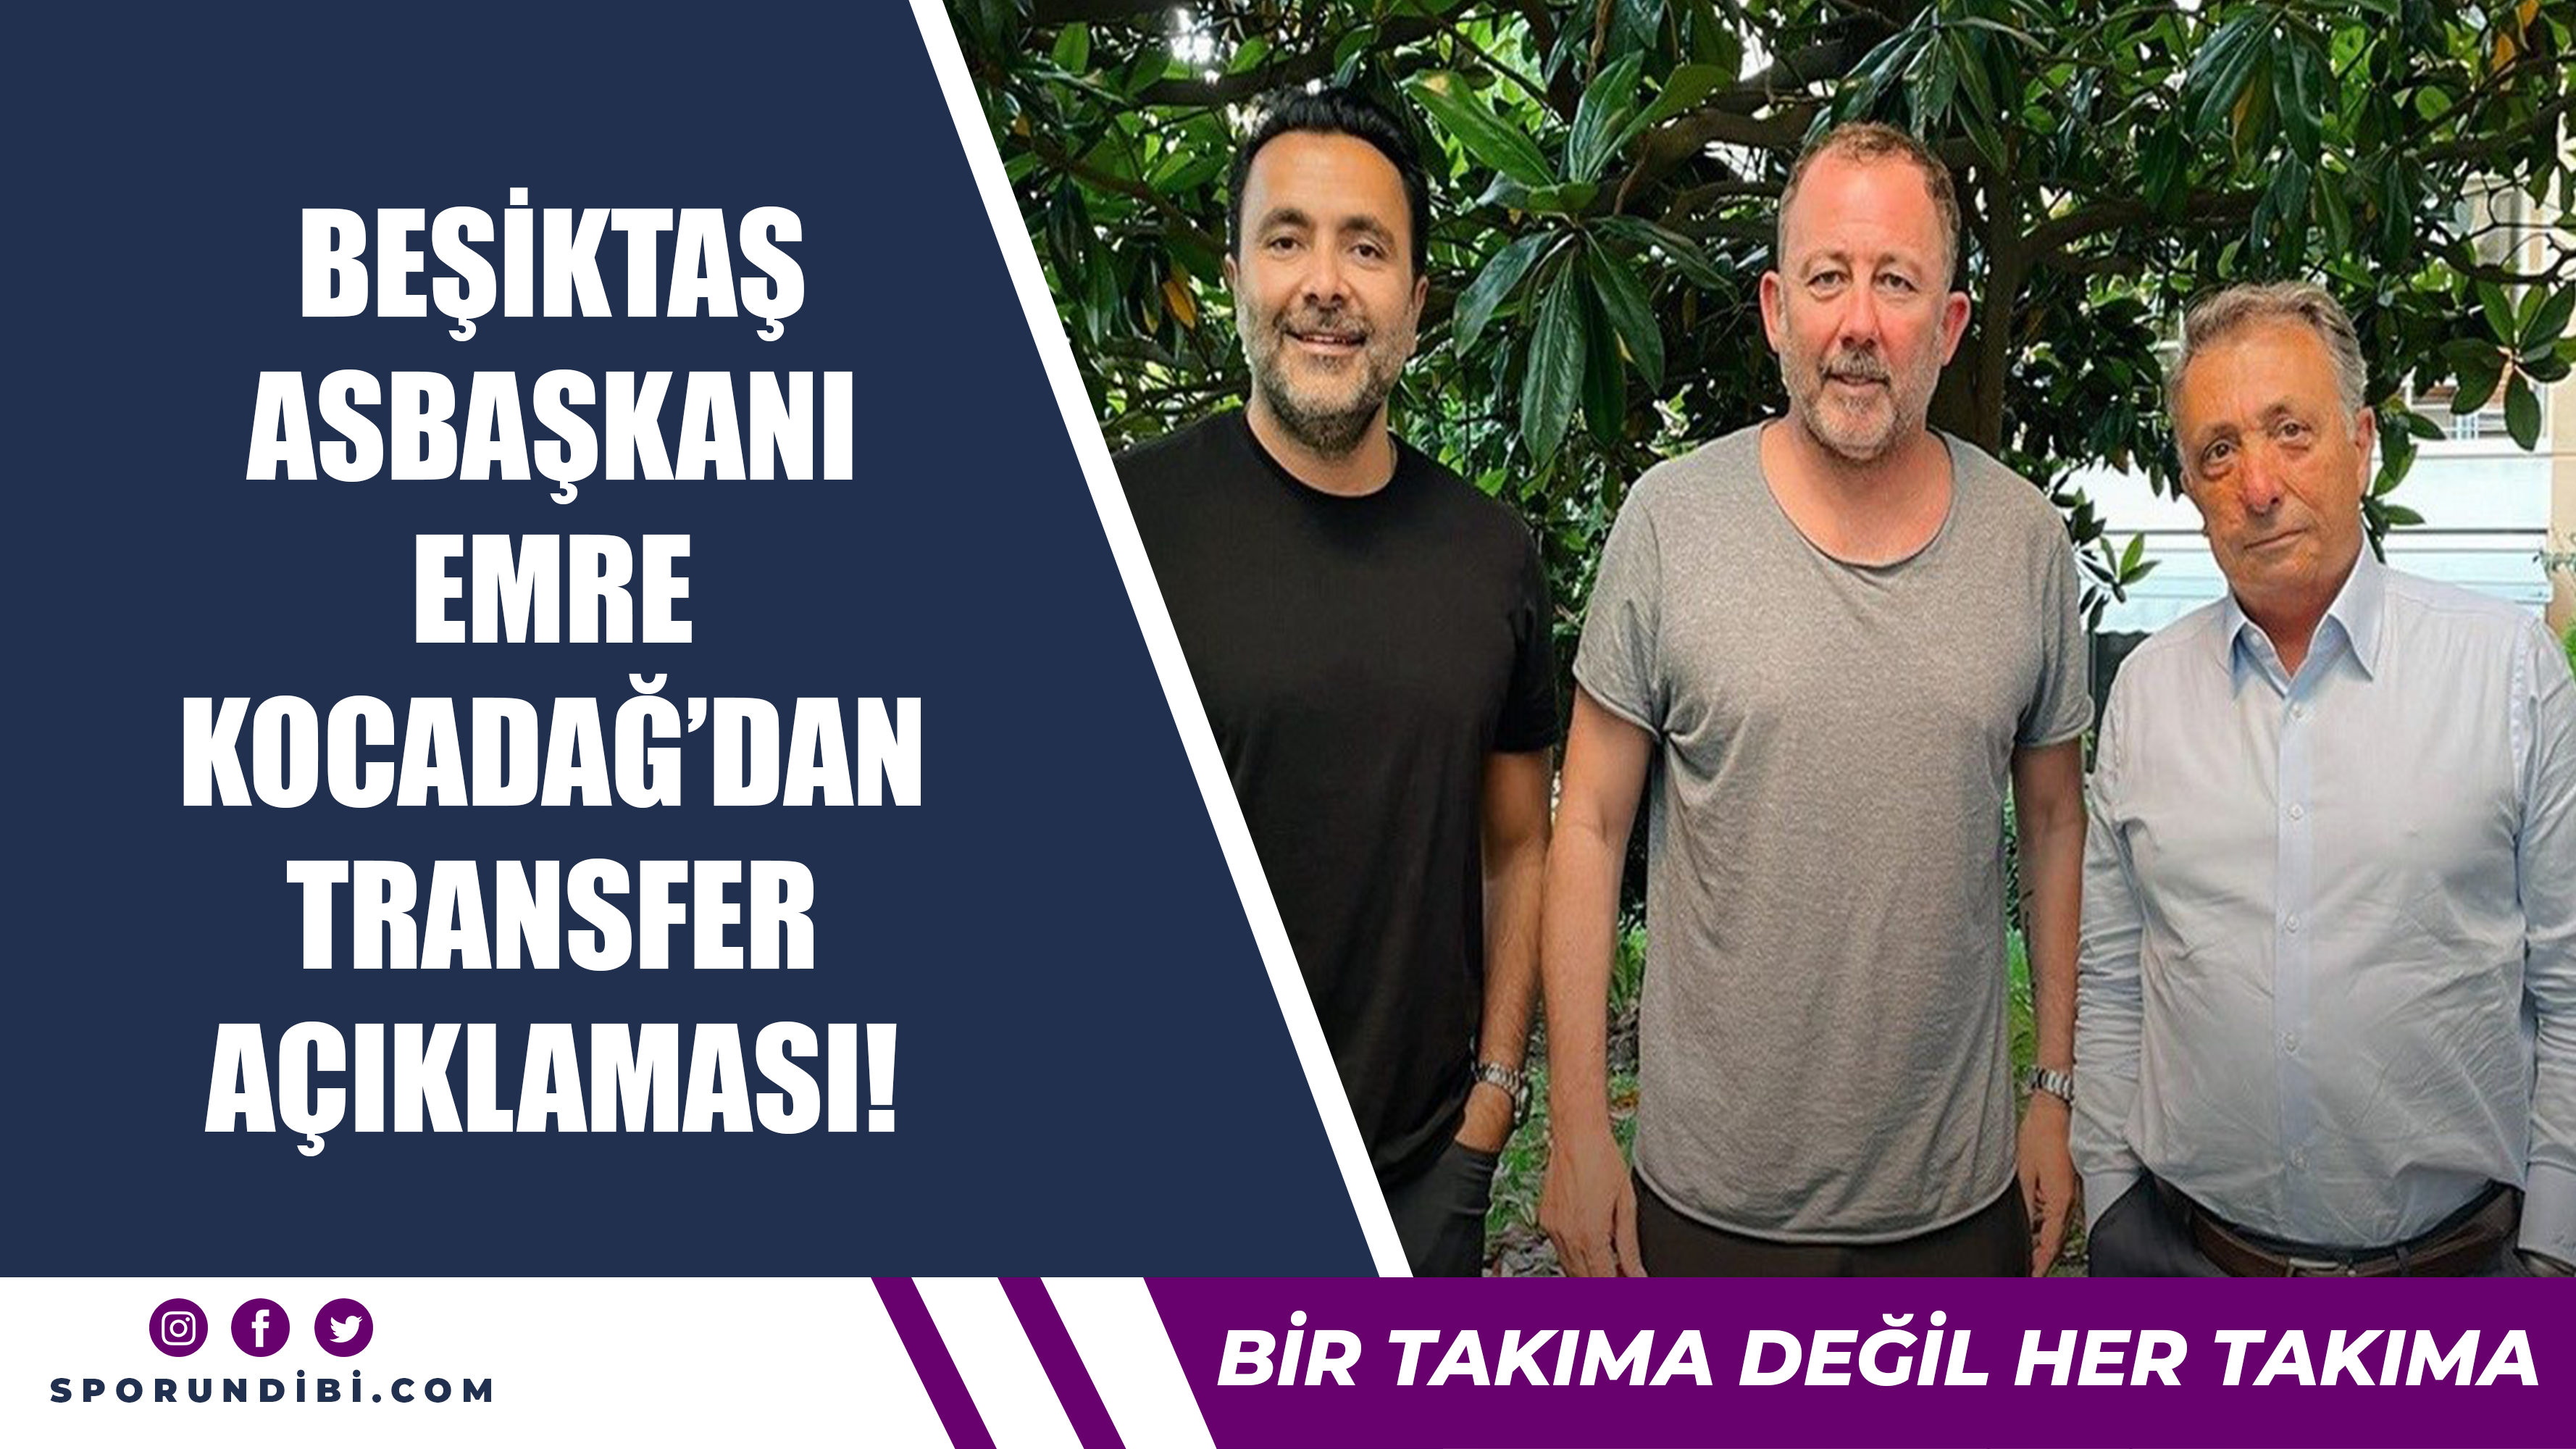 Beşiktaş asbaşkanı Emre Kocadağ'dan transfer açıklaması!